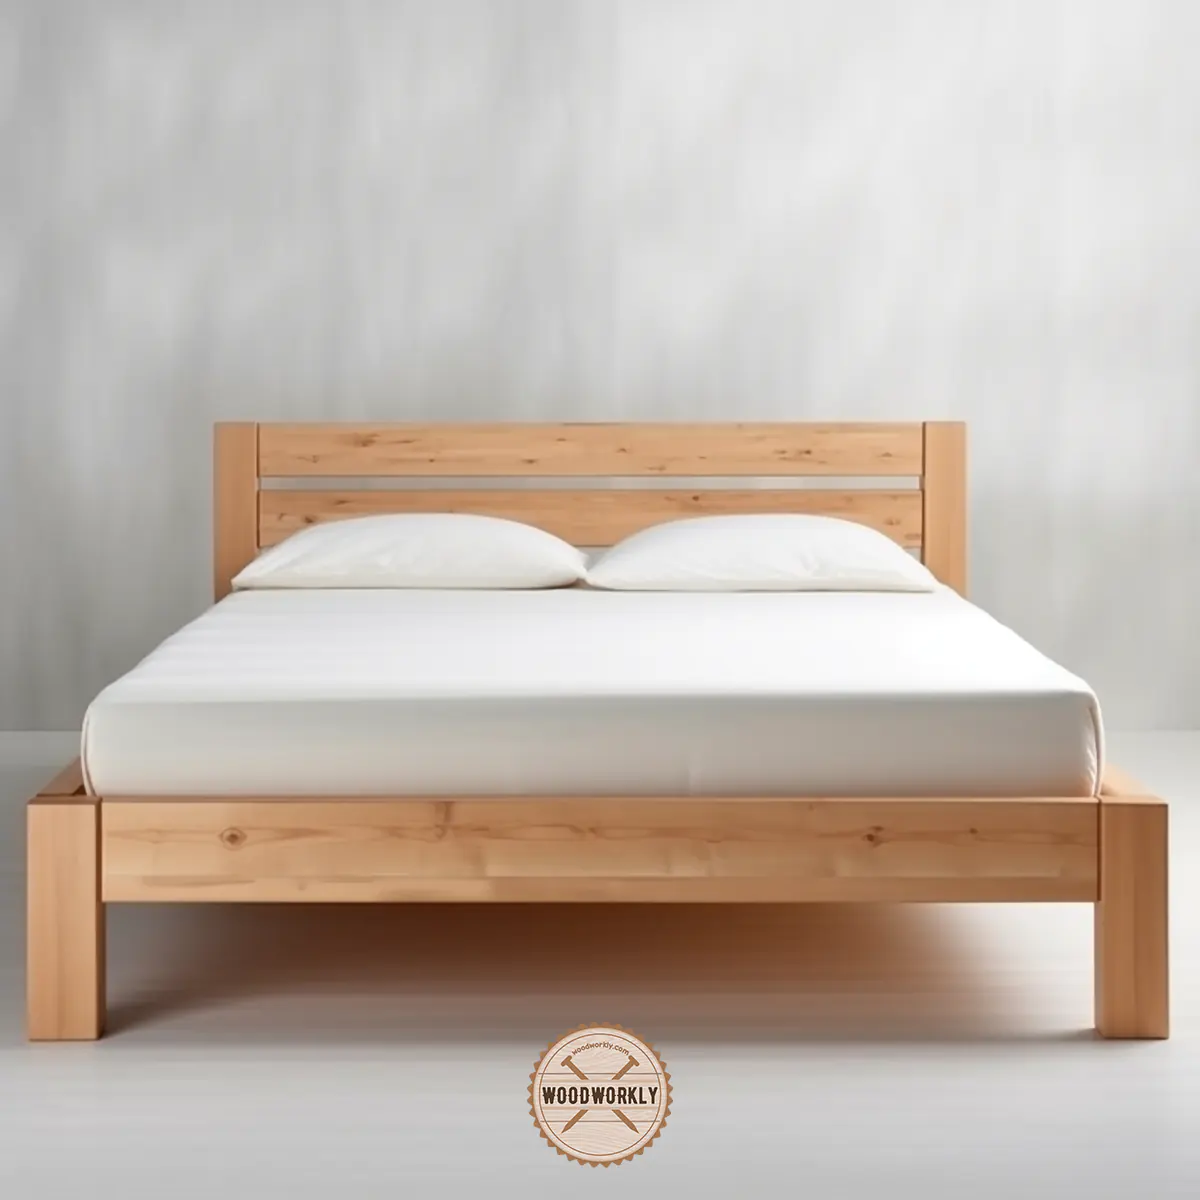 Spruce wood bed frame